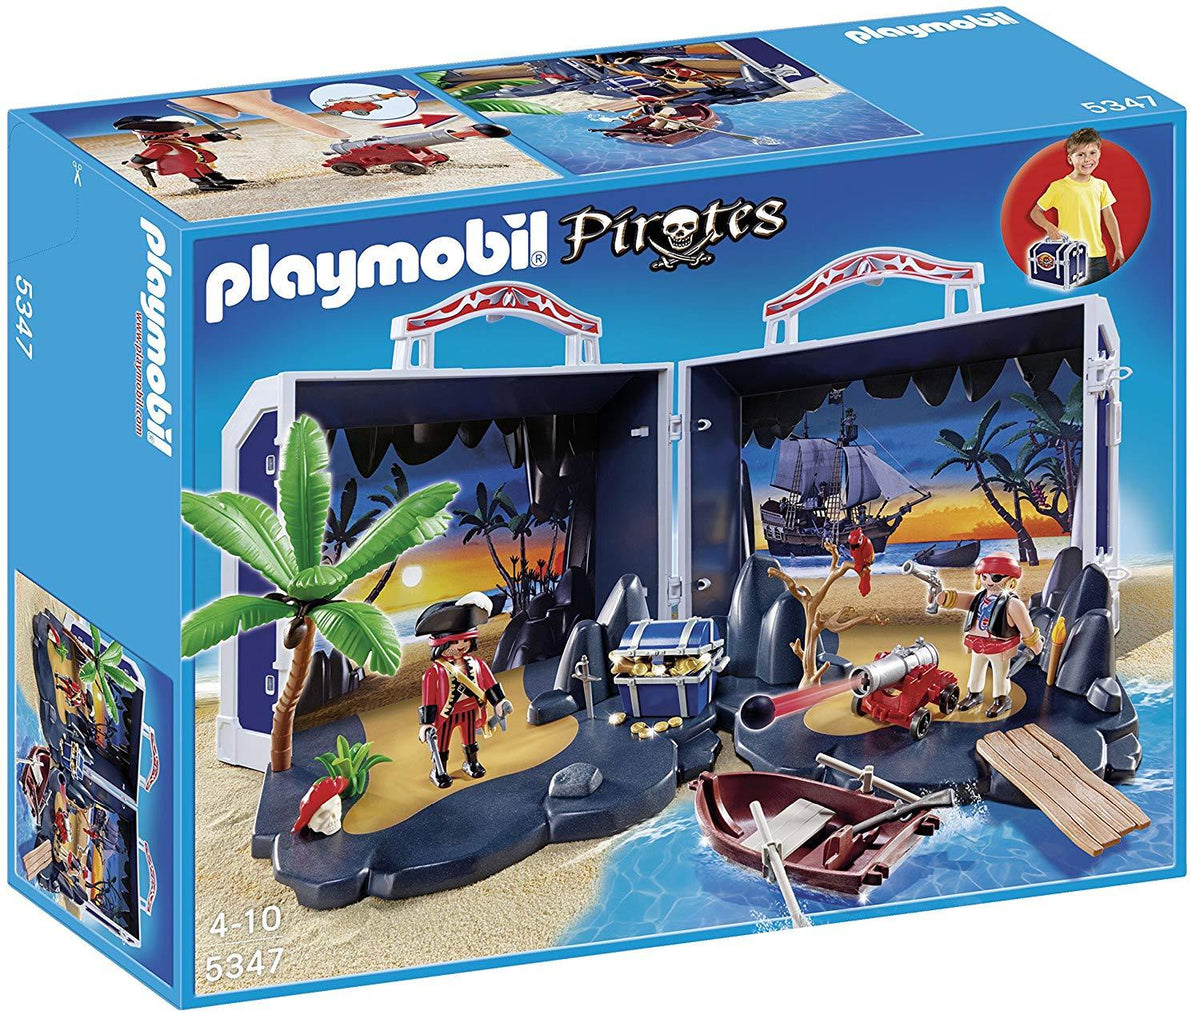 Playmobil 5347 Take Along Pirates Chest